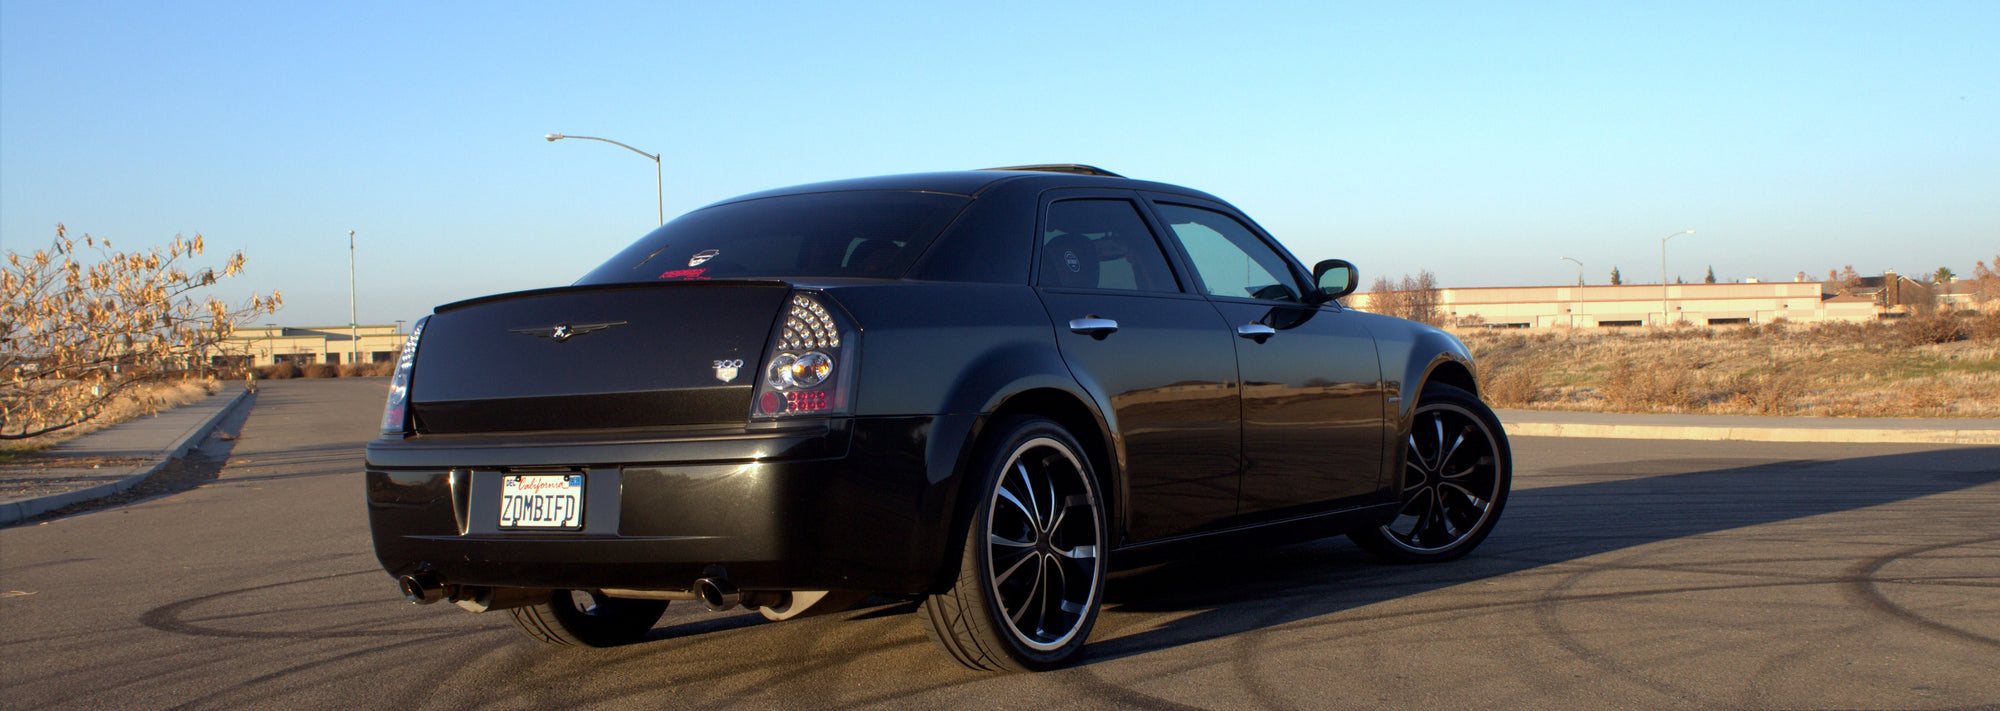 2005 Chrysler 300 6.1L V8